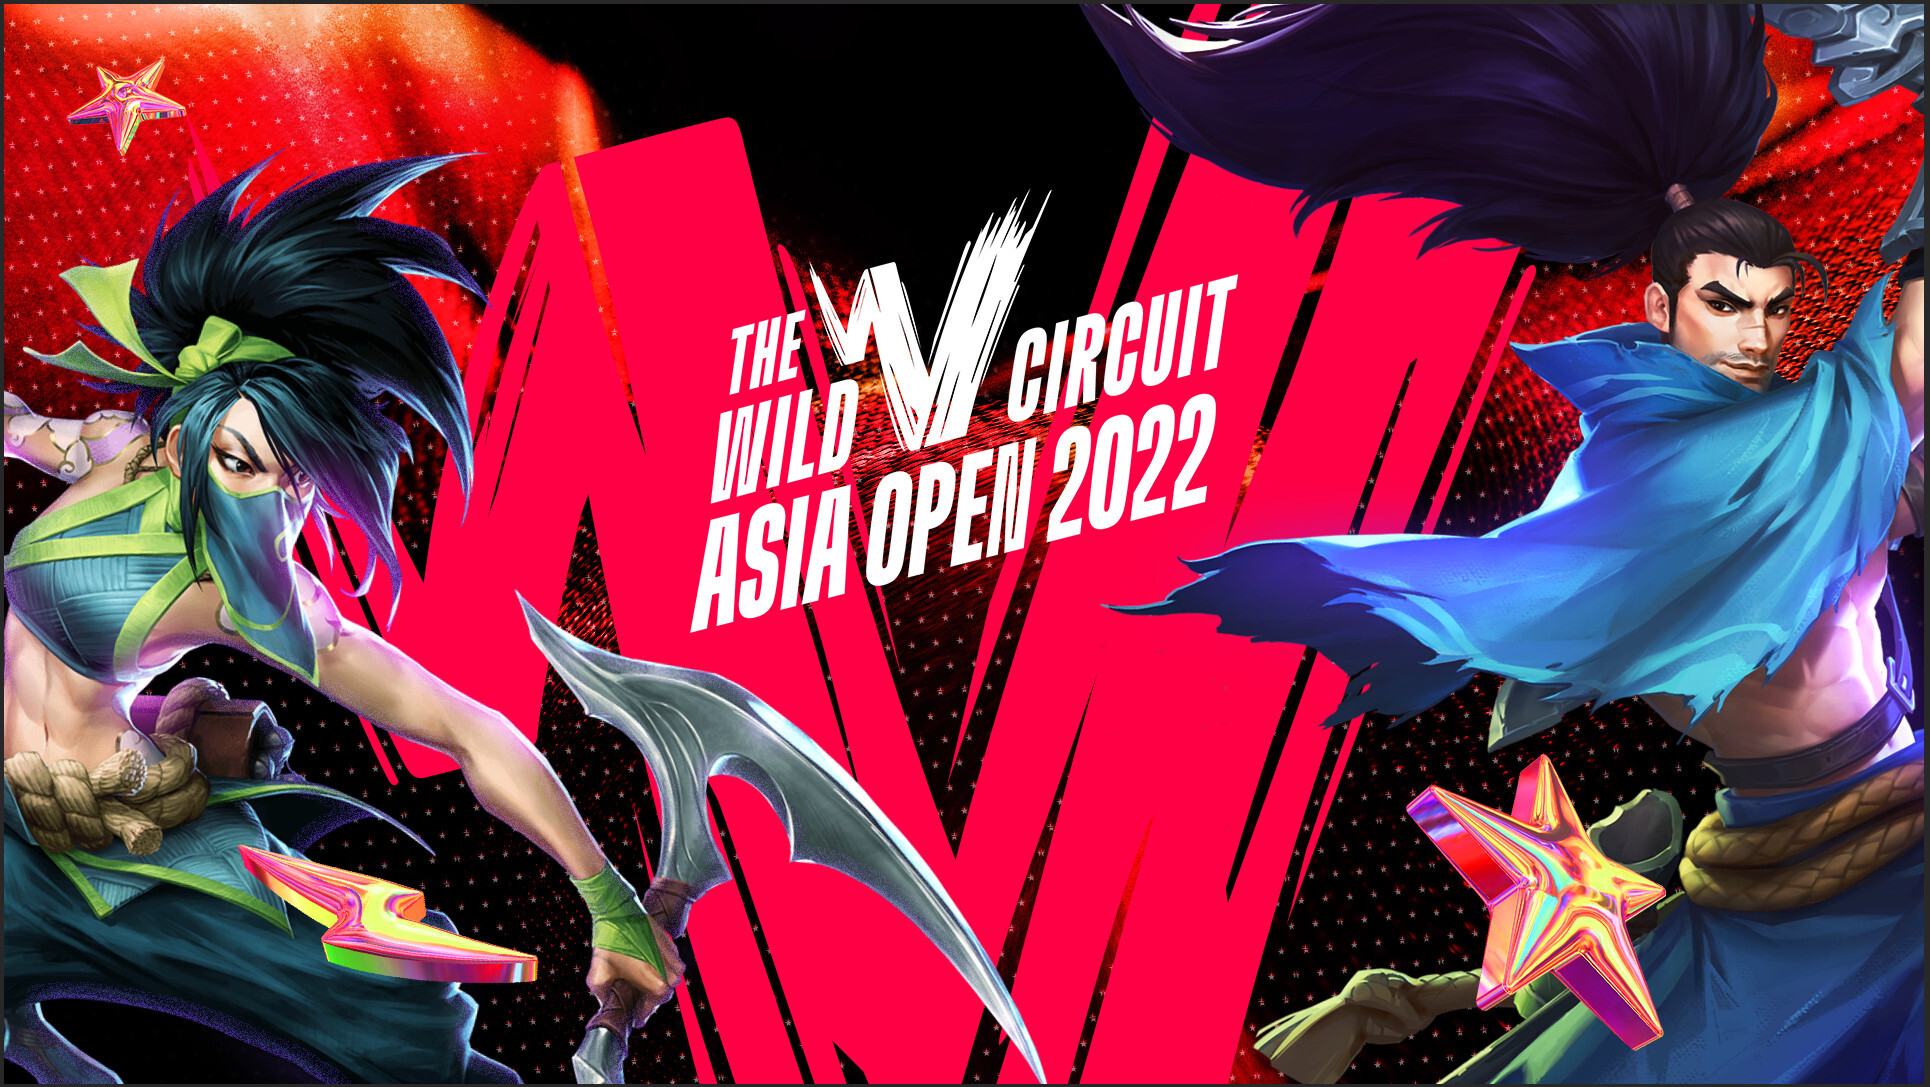 東南アジア、韓国、日本の3つの地域から参加する公式オフシーズントーナメント「Wild Circuit Asia Open 2022」が10月から12月にかけて開催！